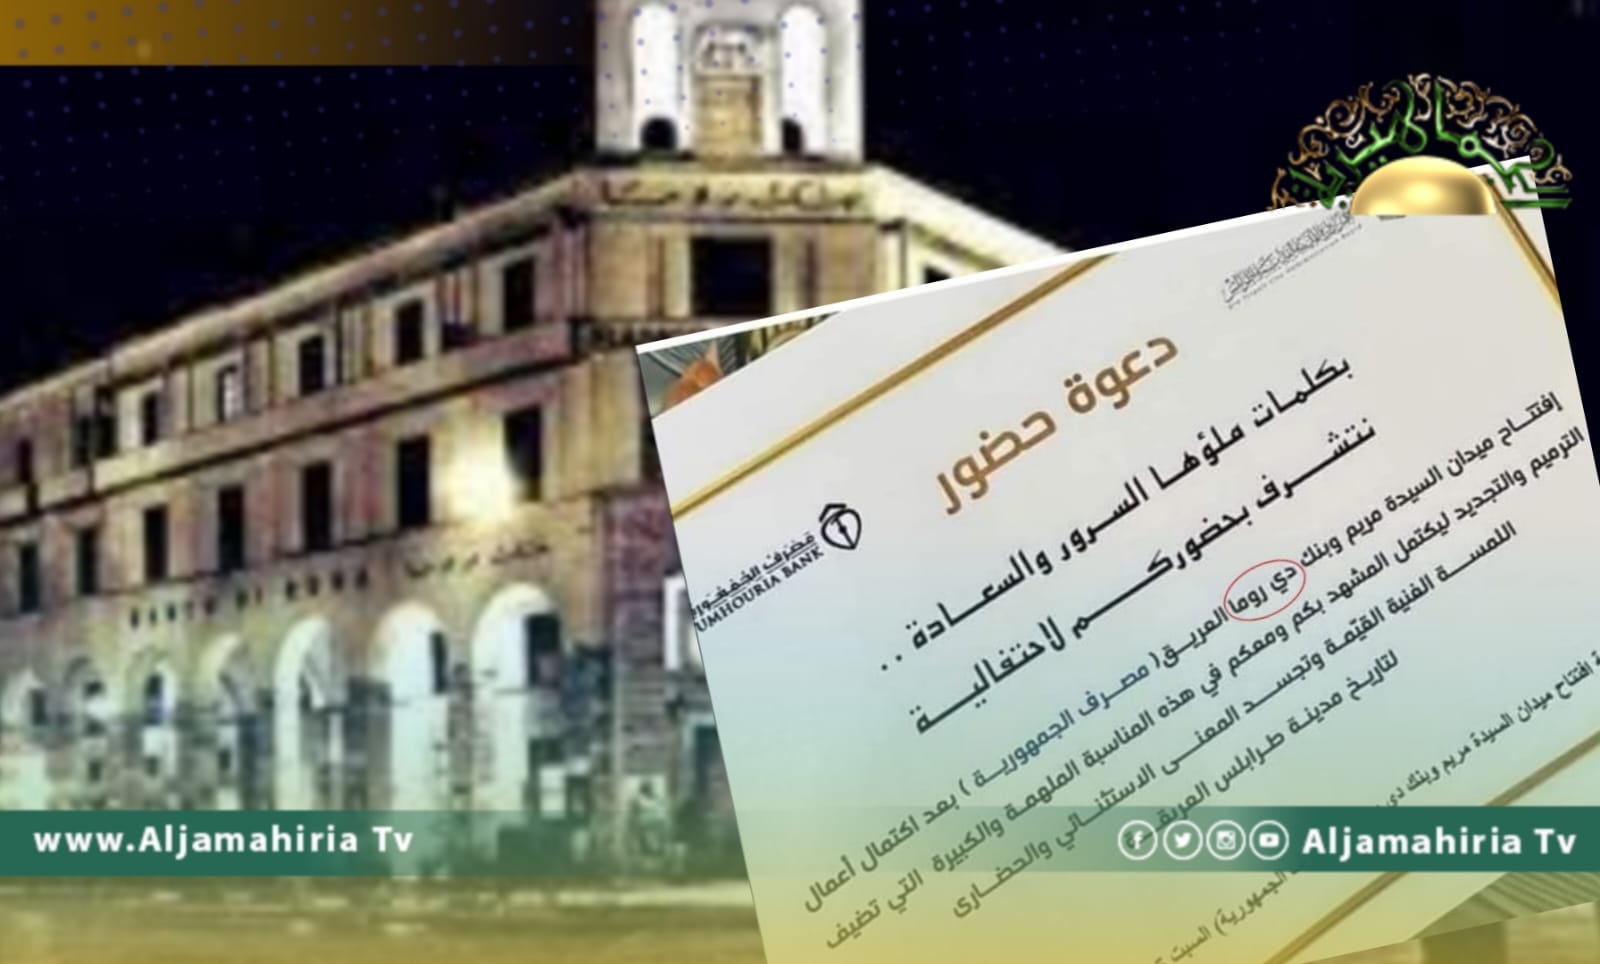 ليبيا تستعيد المحتل الإيطالي بدعوة لحضور افتتاح بنك دي روما بدلا عن مصرف الجمهورية!!